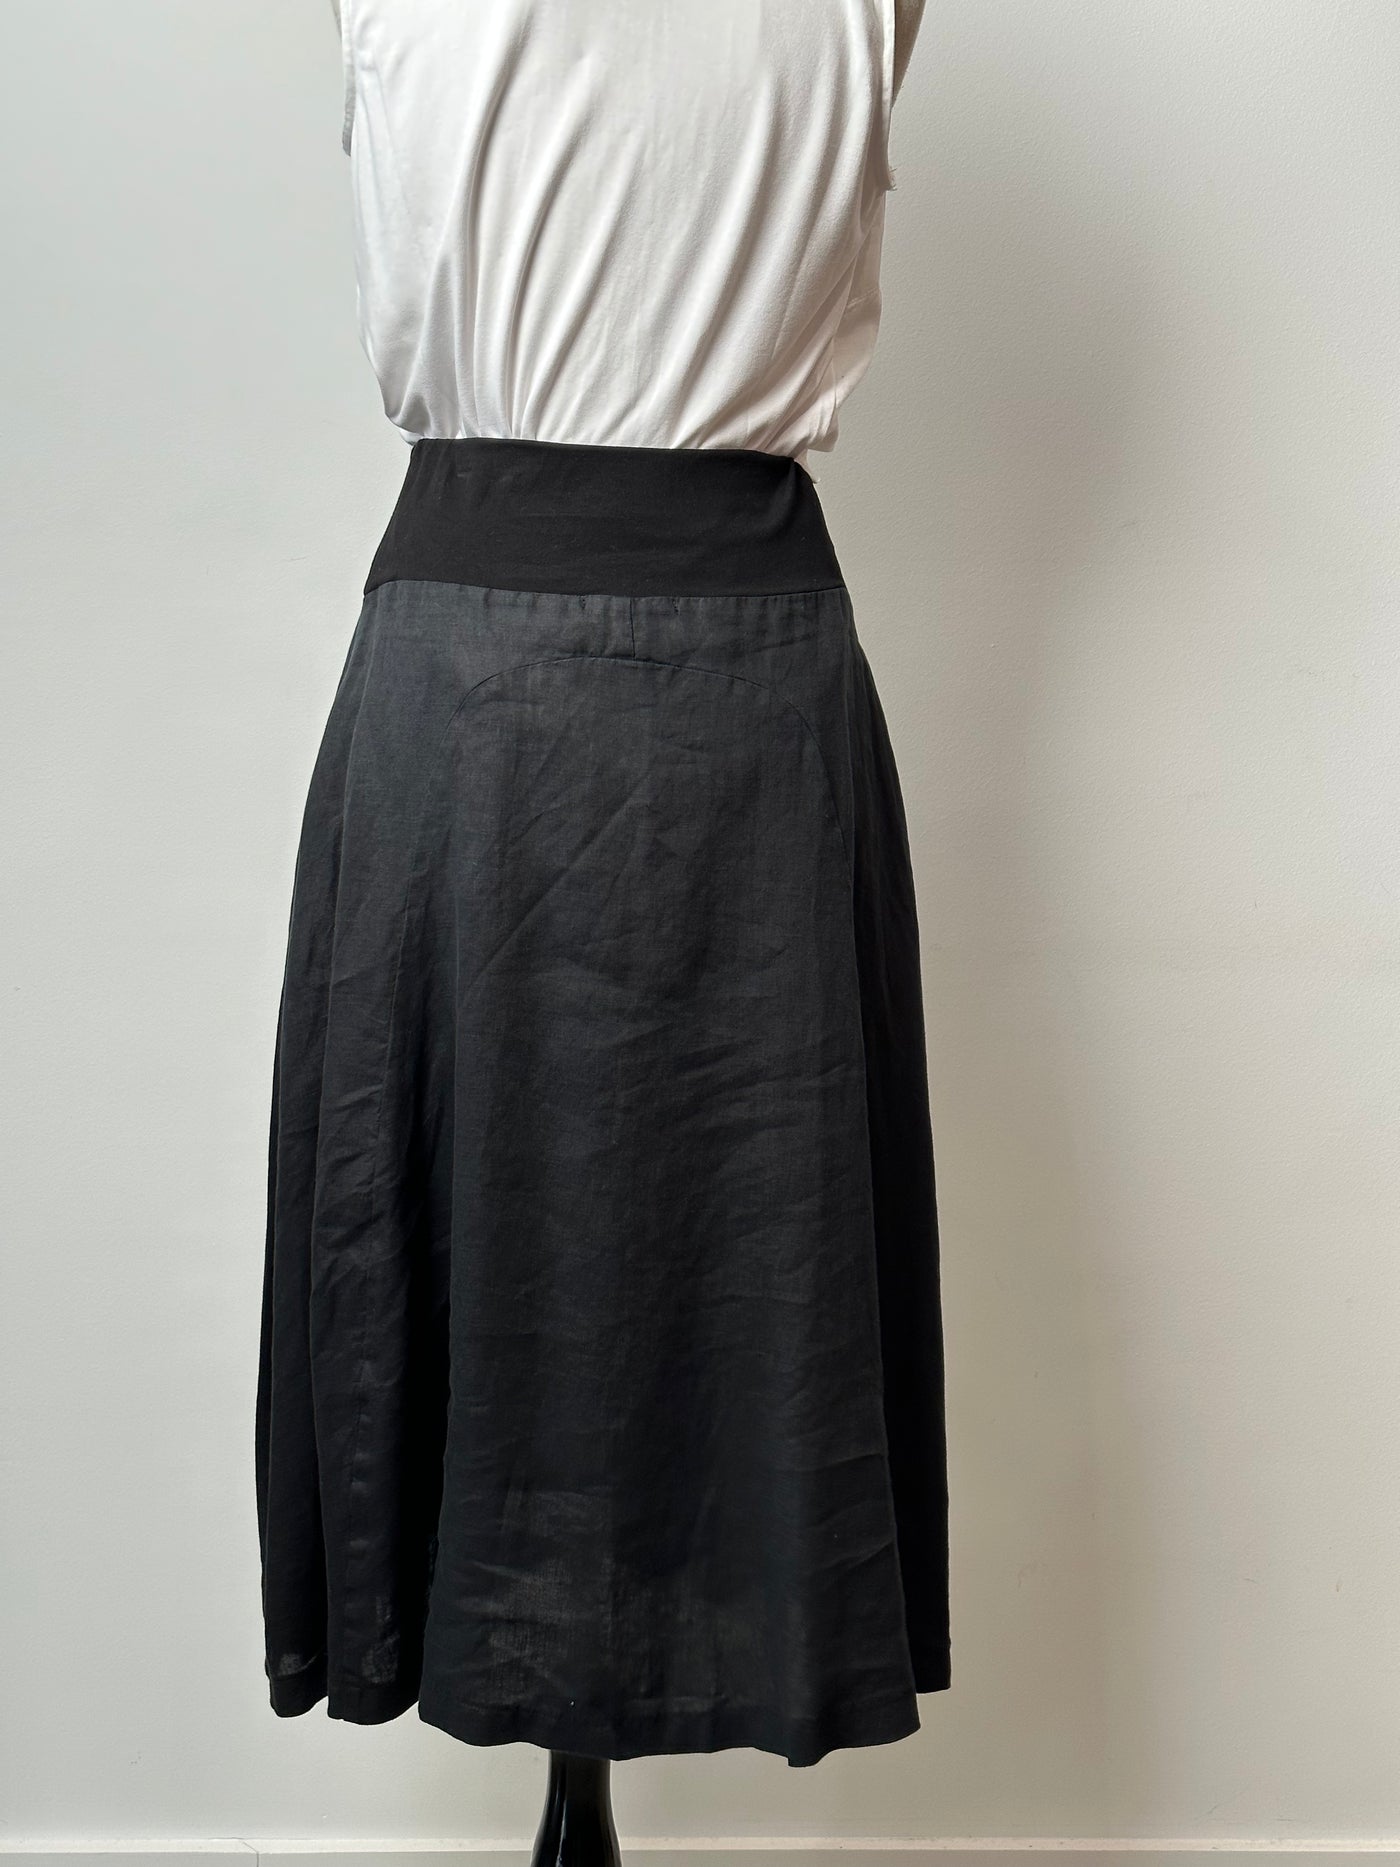 Valia - Isabelle skirt - Black